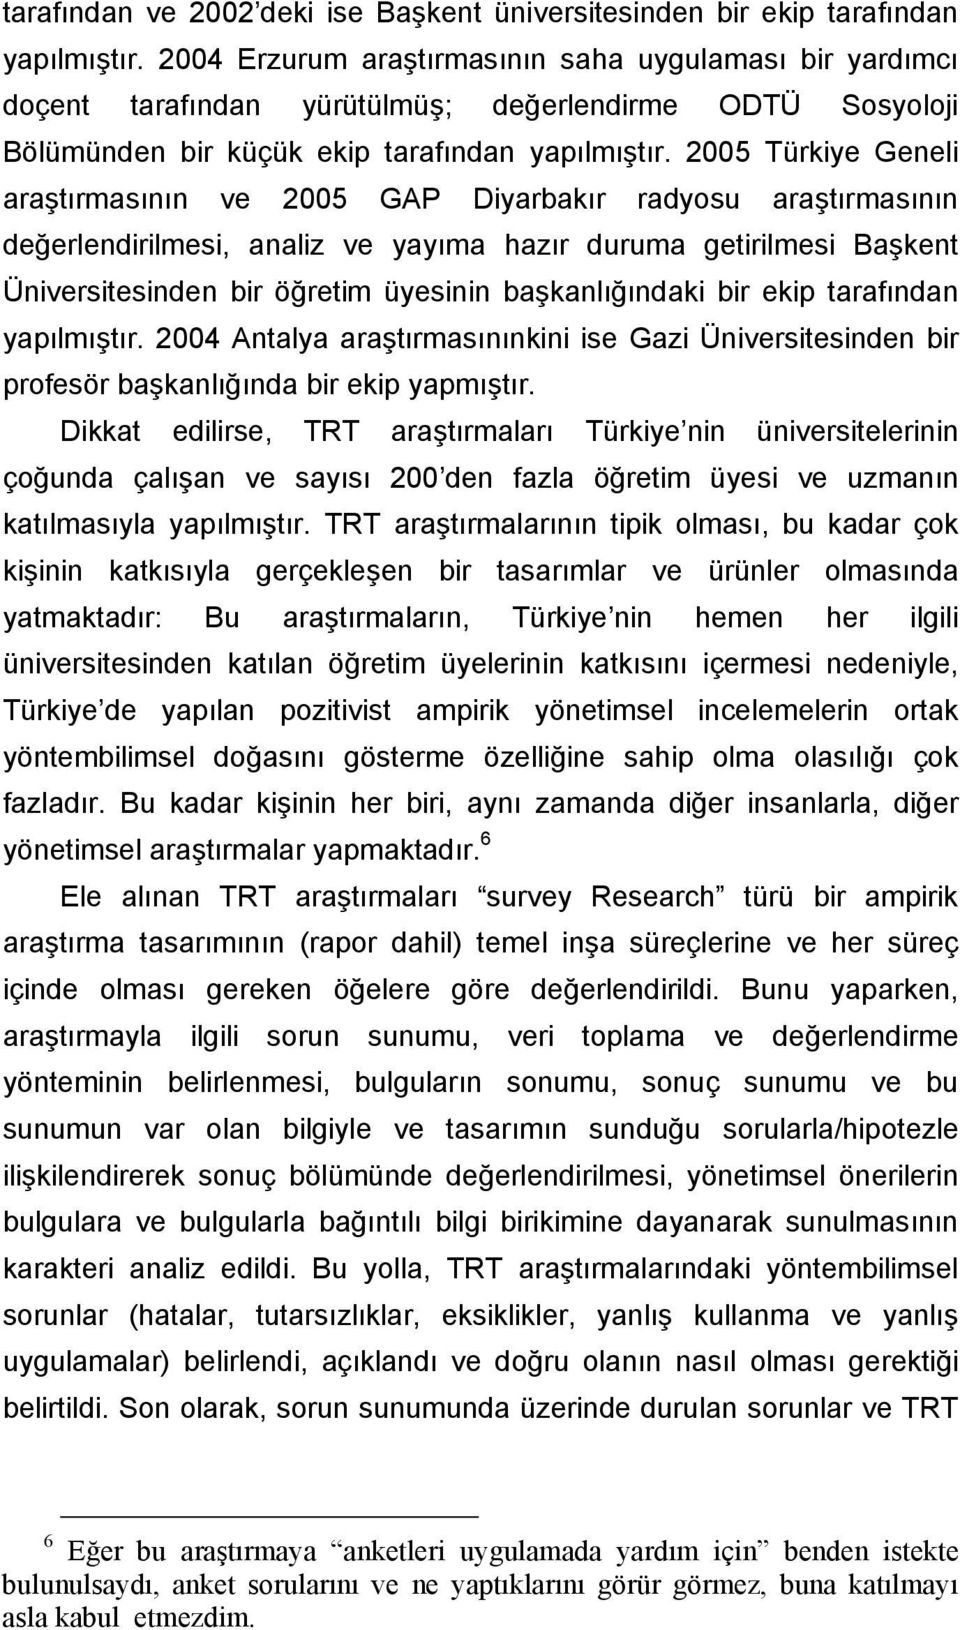 2005 Türkiye Geneli araştırmasının ve 2005 GAP Diyarbakır radyosu araştırmasının değerlendirilmesi, analiz ve yayıma hazır duruma getirilmesi Başkent Üniversitesinden bir öğretim üyesinin